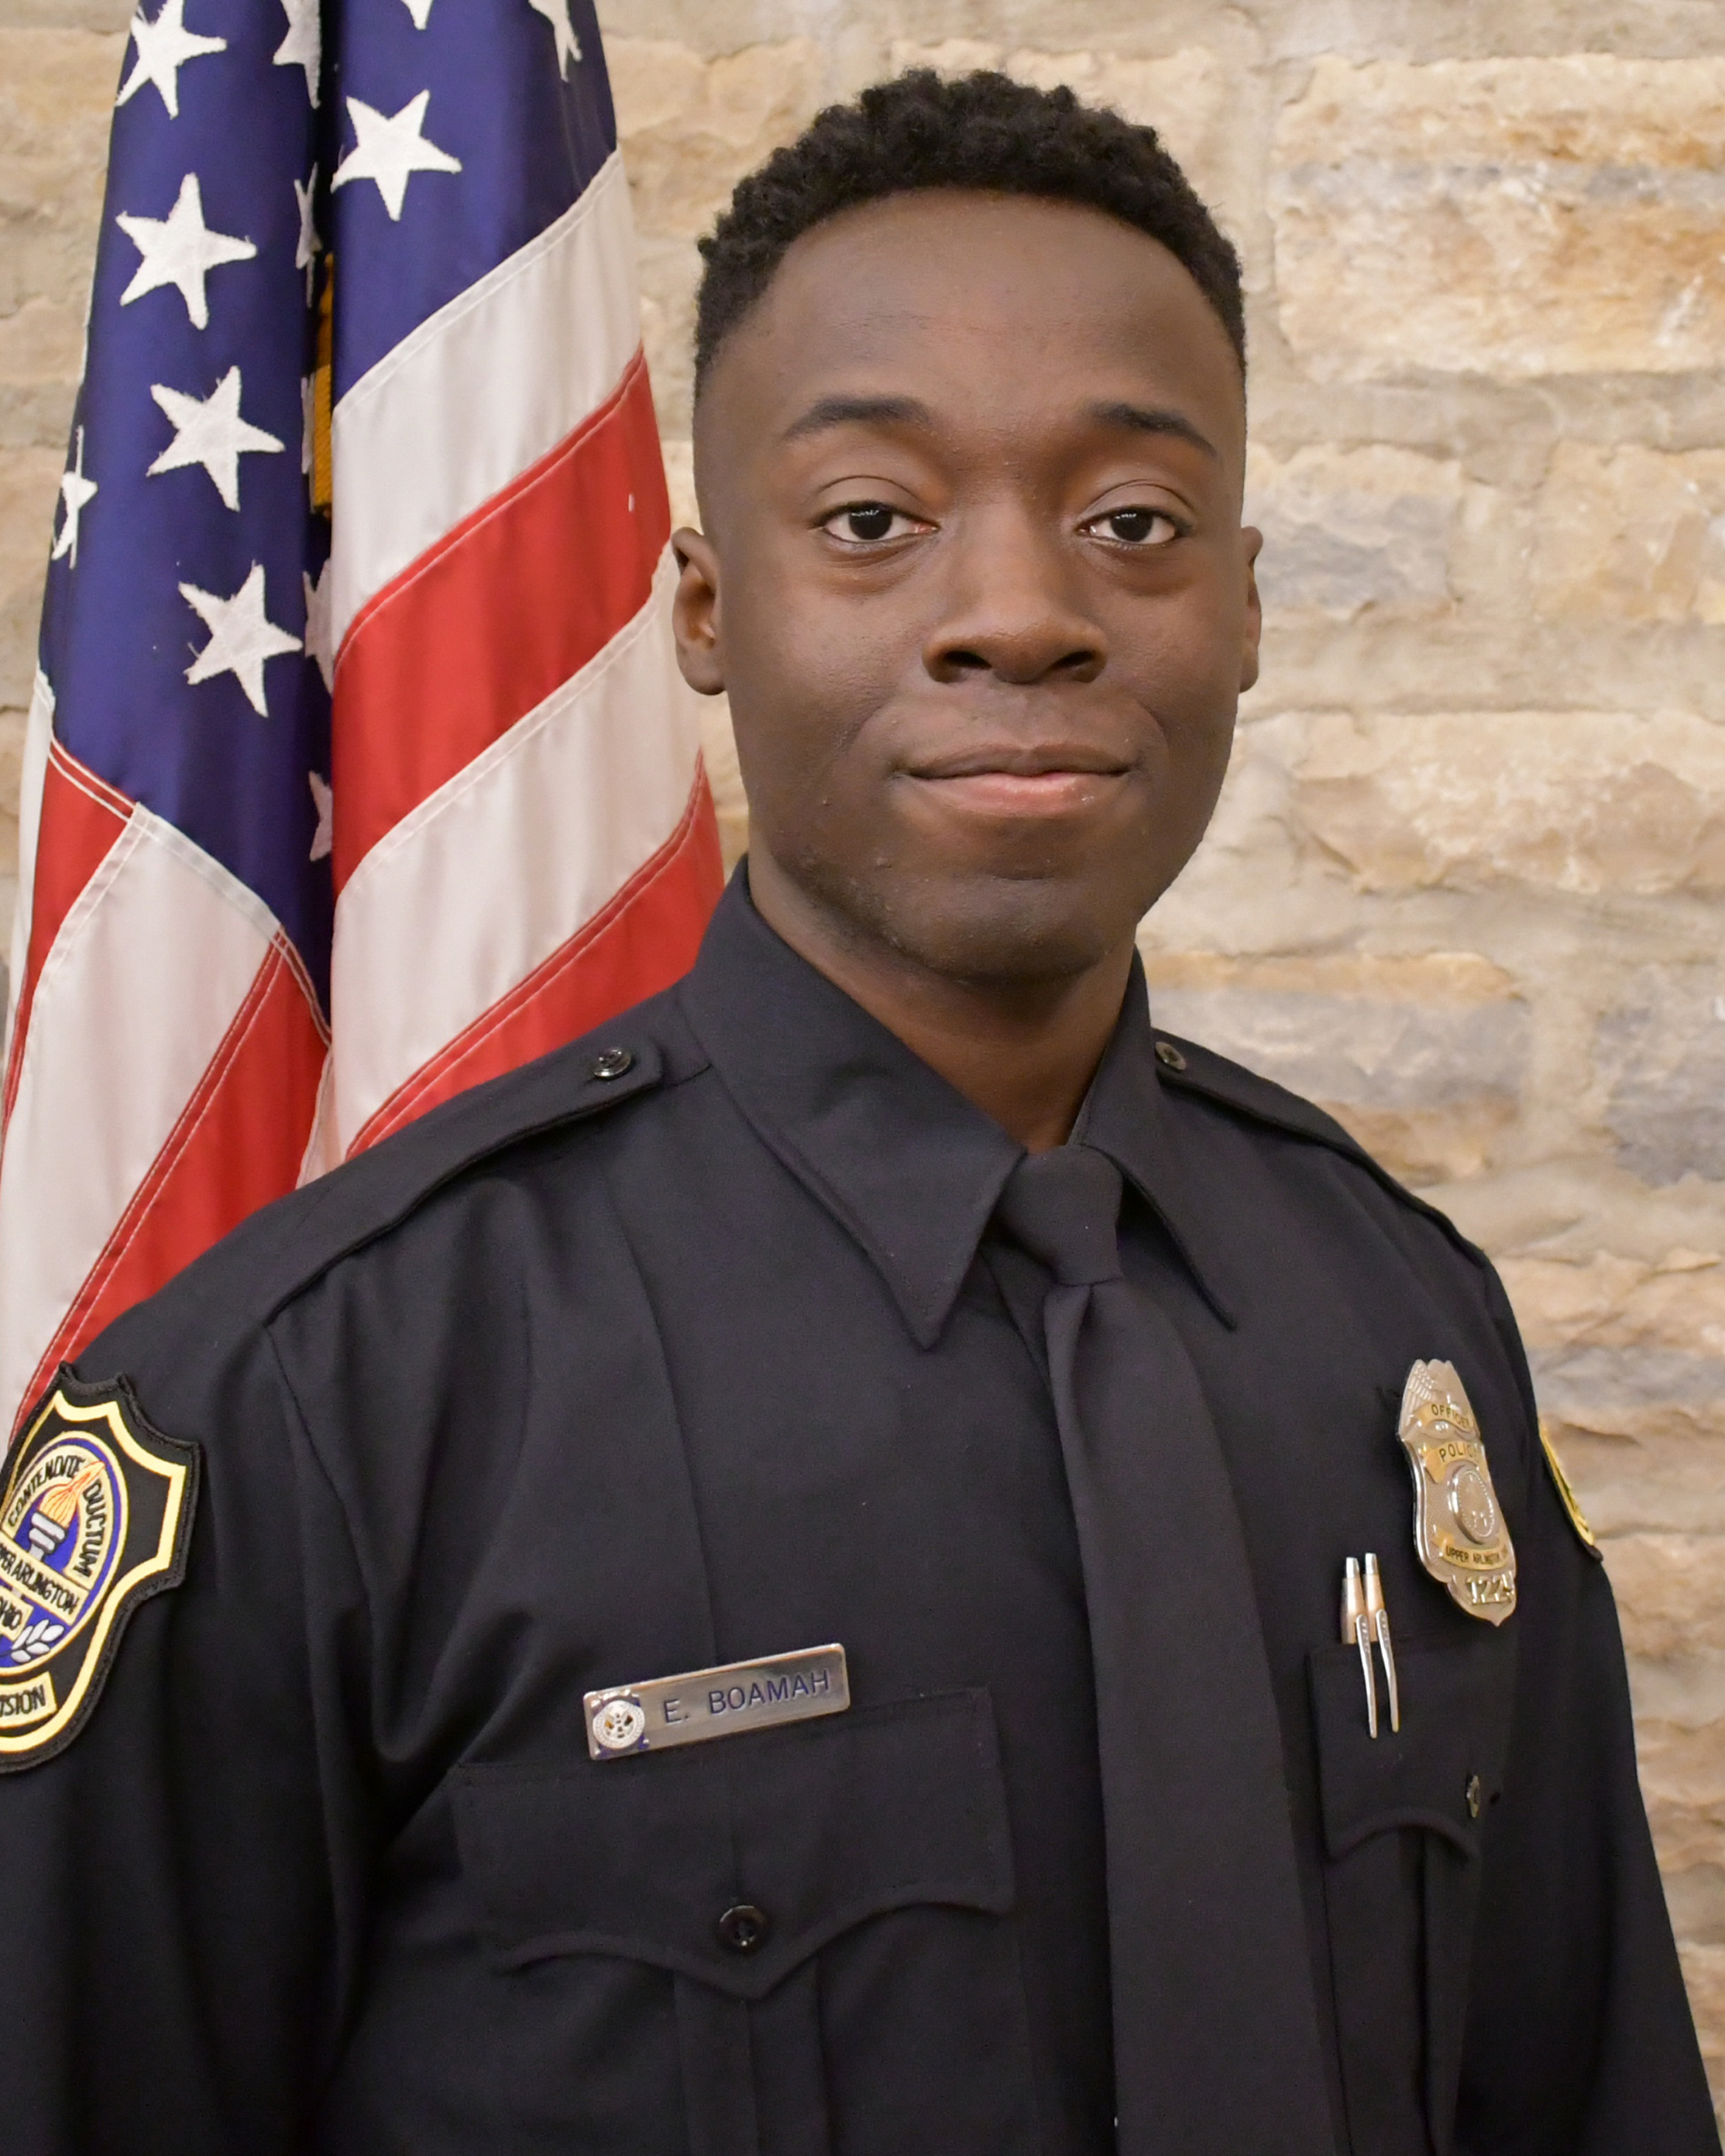 Officer Emmanuel Boamah